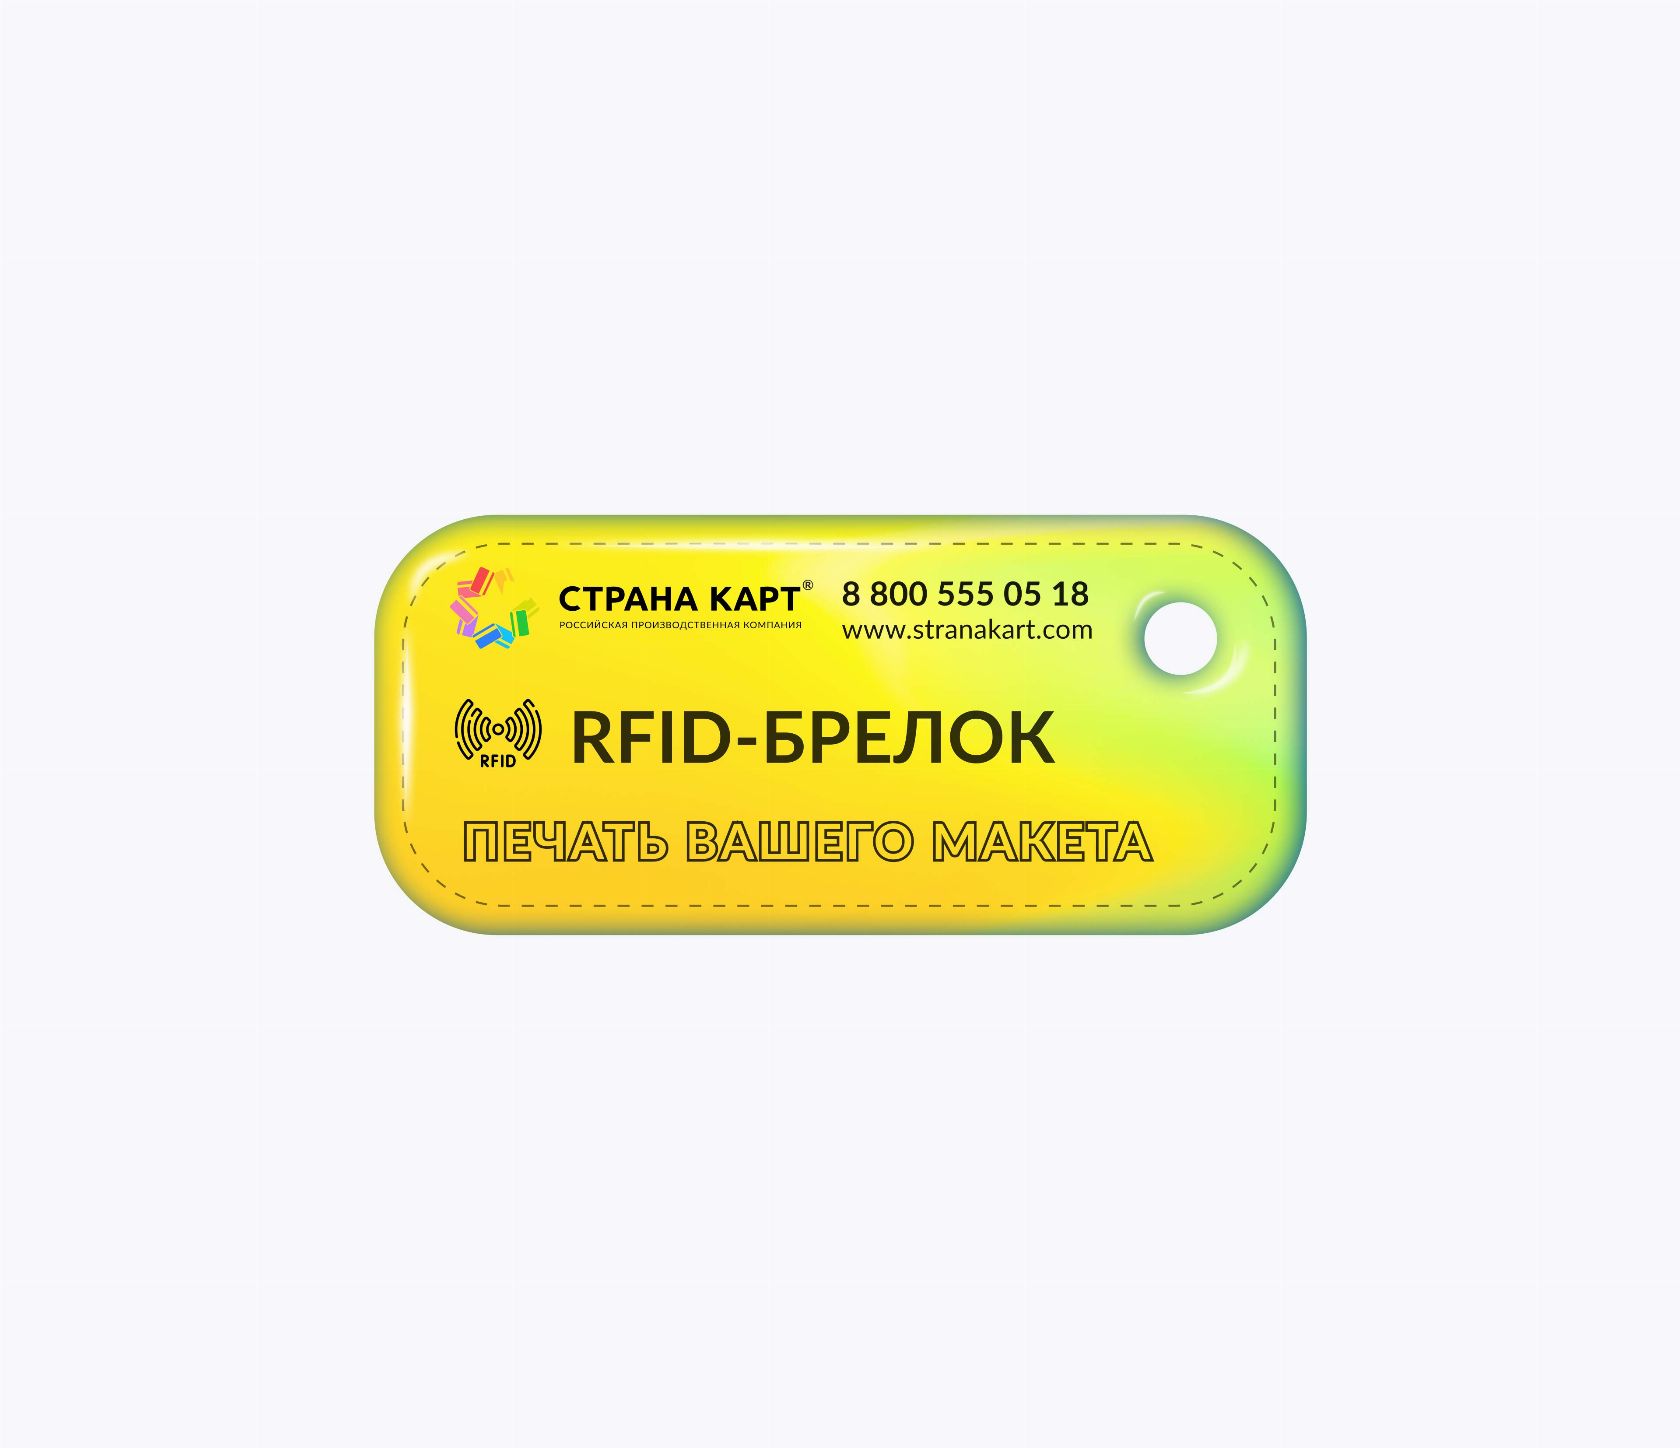 Прямоугольные мини RFID-брелоки NEOKEY® с чипом EM-MARINE TK4100 RFID-брелоки NEOKEY® с чипом EM-MARINE TK4100 и вашим логотипом